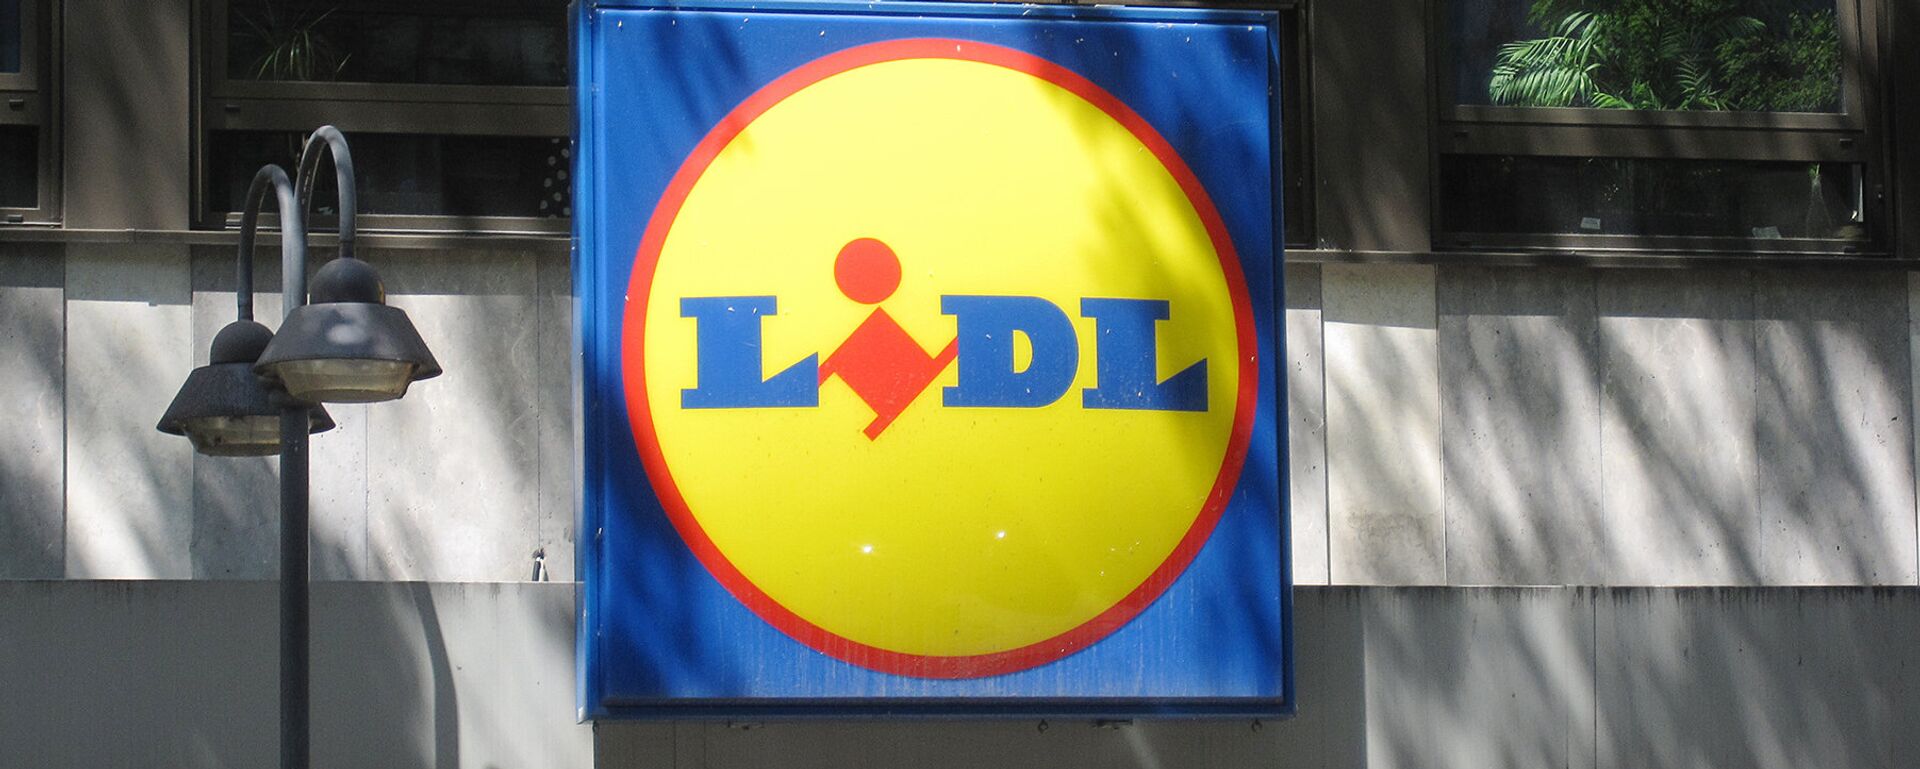 Логотип немецкой торговой сети Lidl на фасаде магазина - Sputnik Латвия, 1920, 15.08.2017